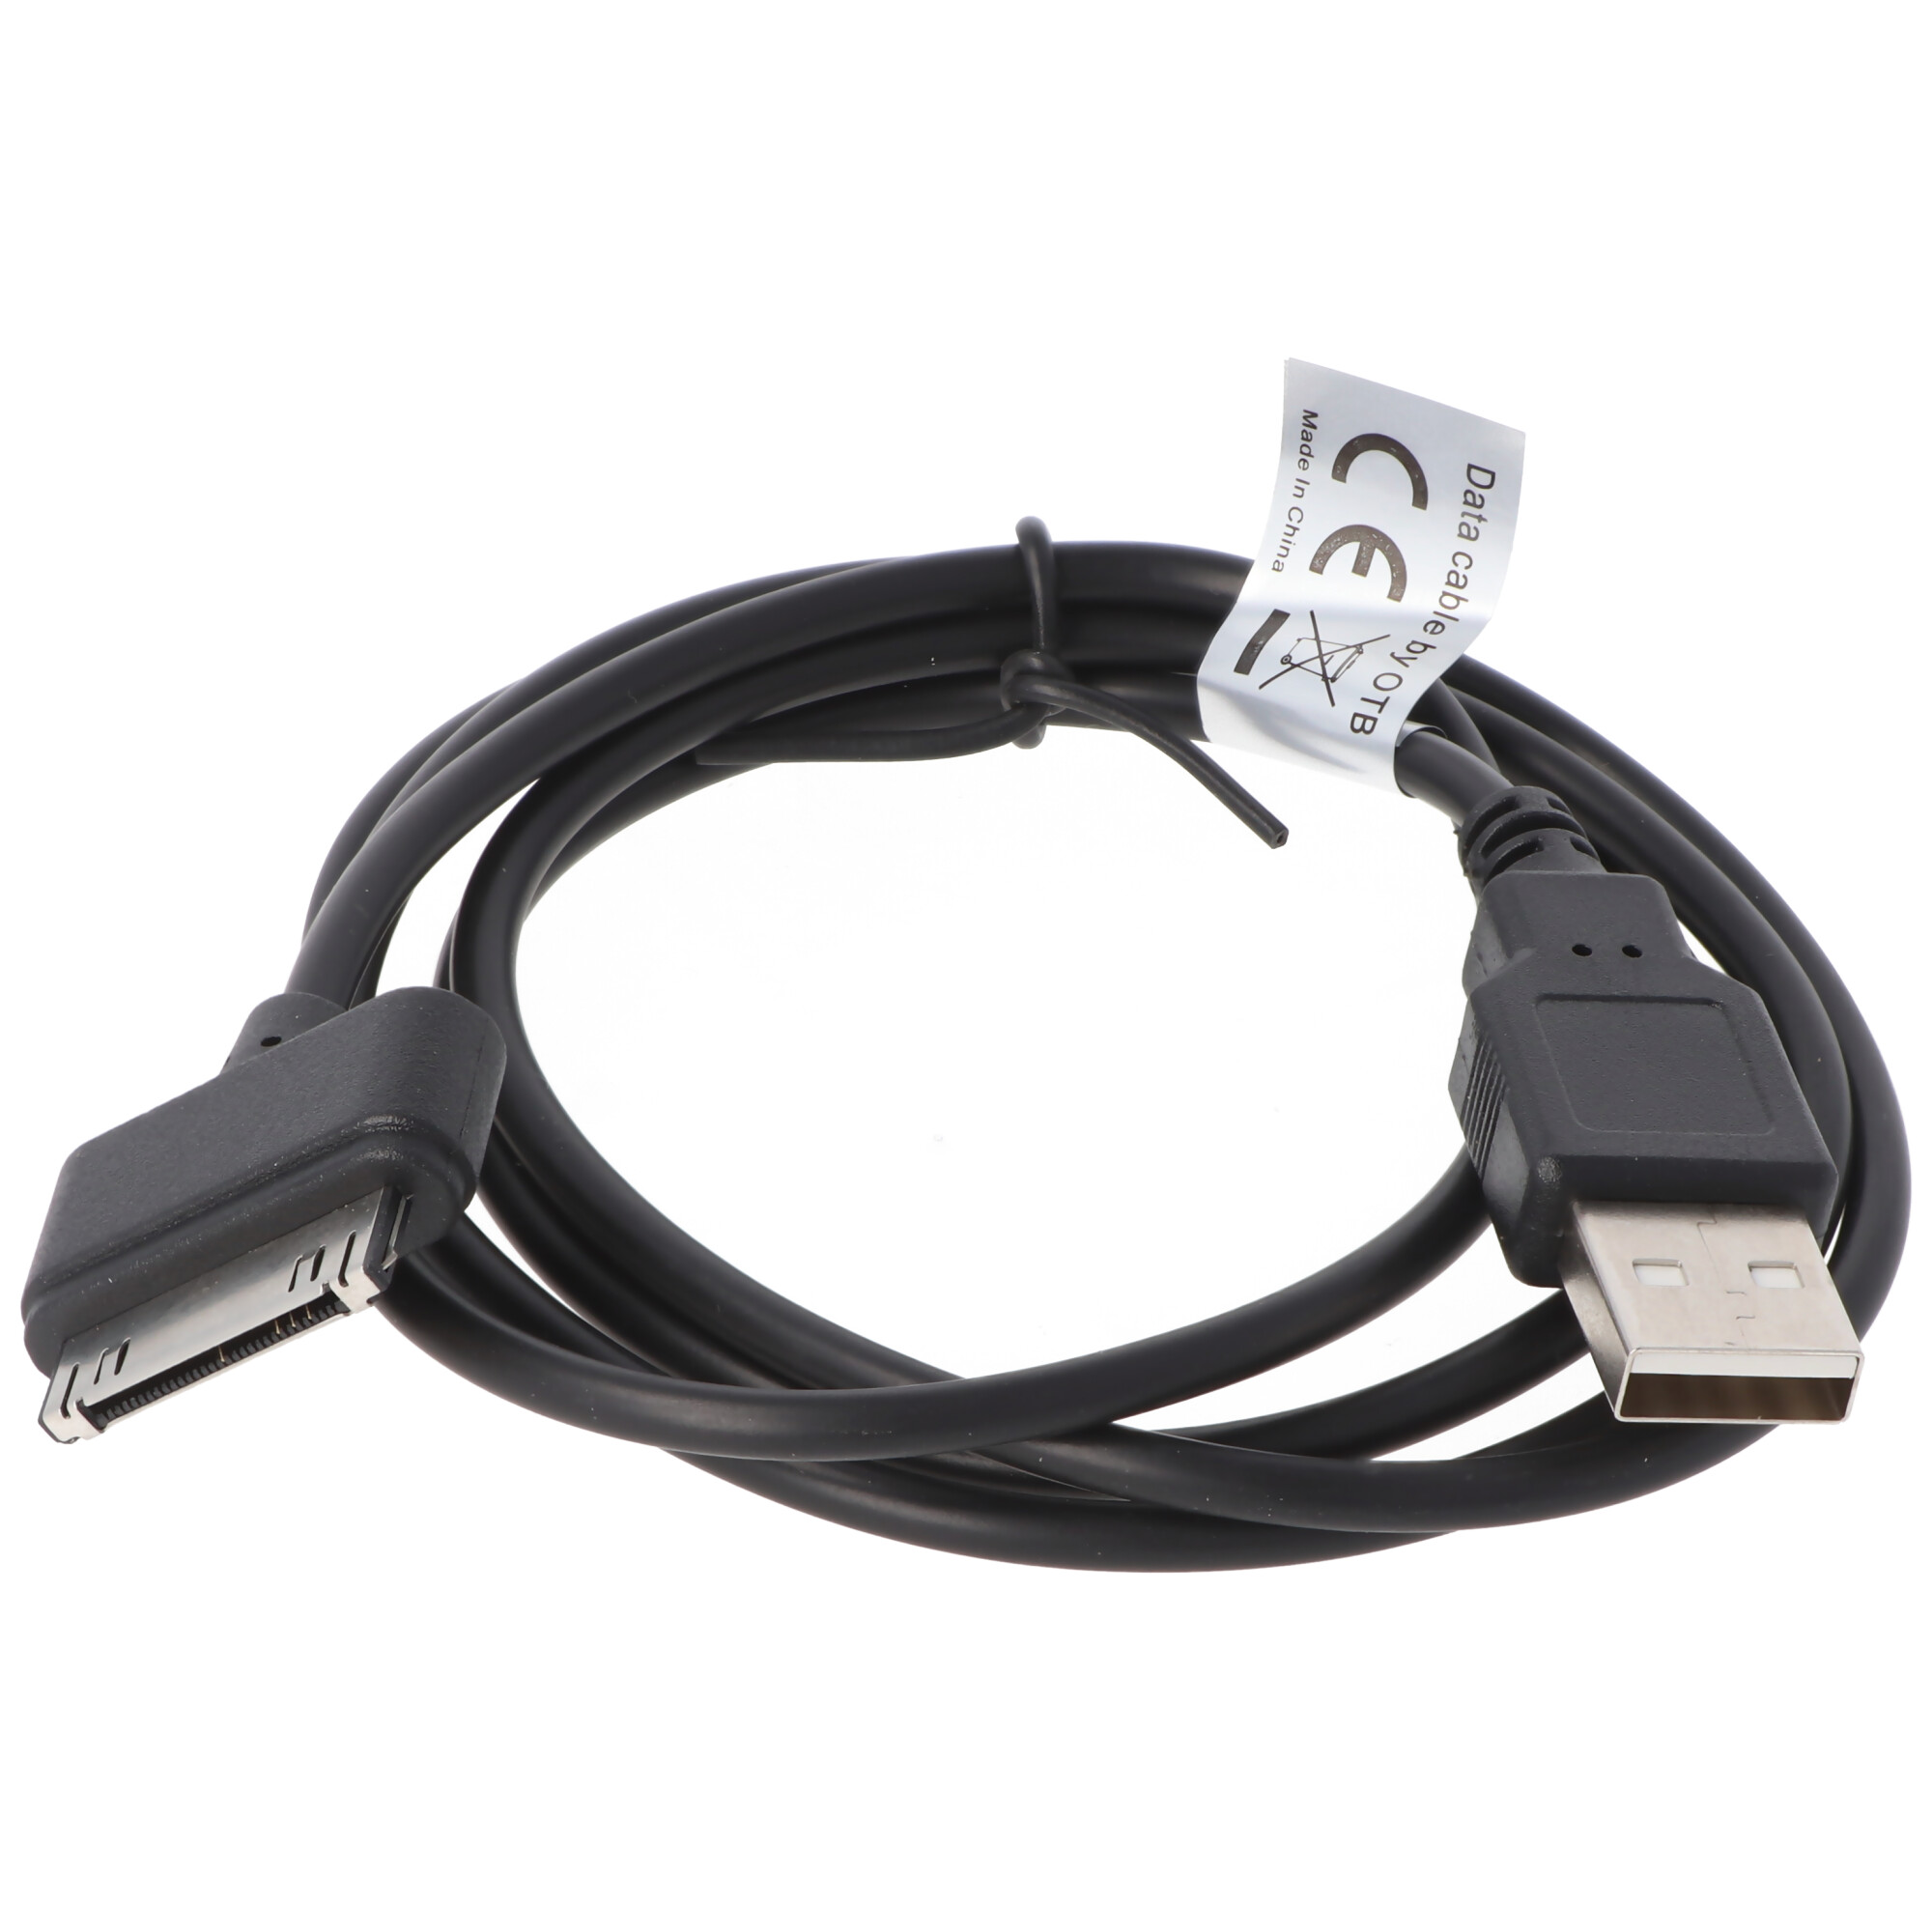 USB Datenkabel passend für Apple iPhone 3G, 3GS, 4, 4S, IPOD SCHWARZ